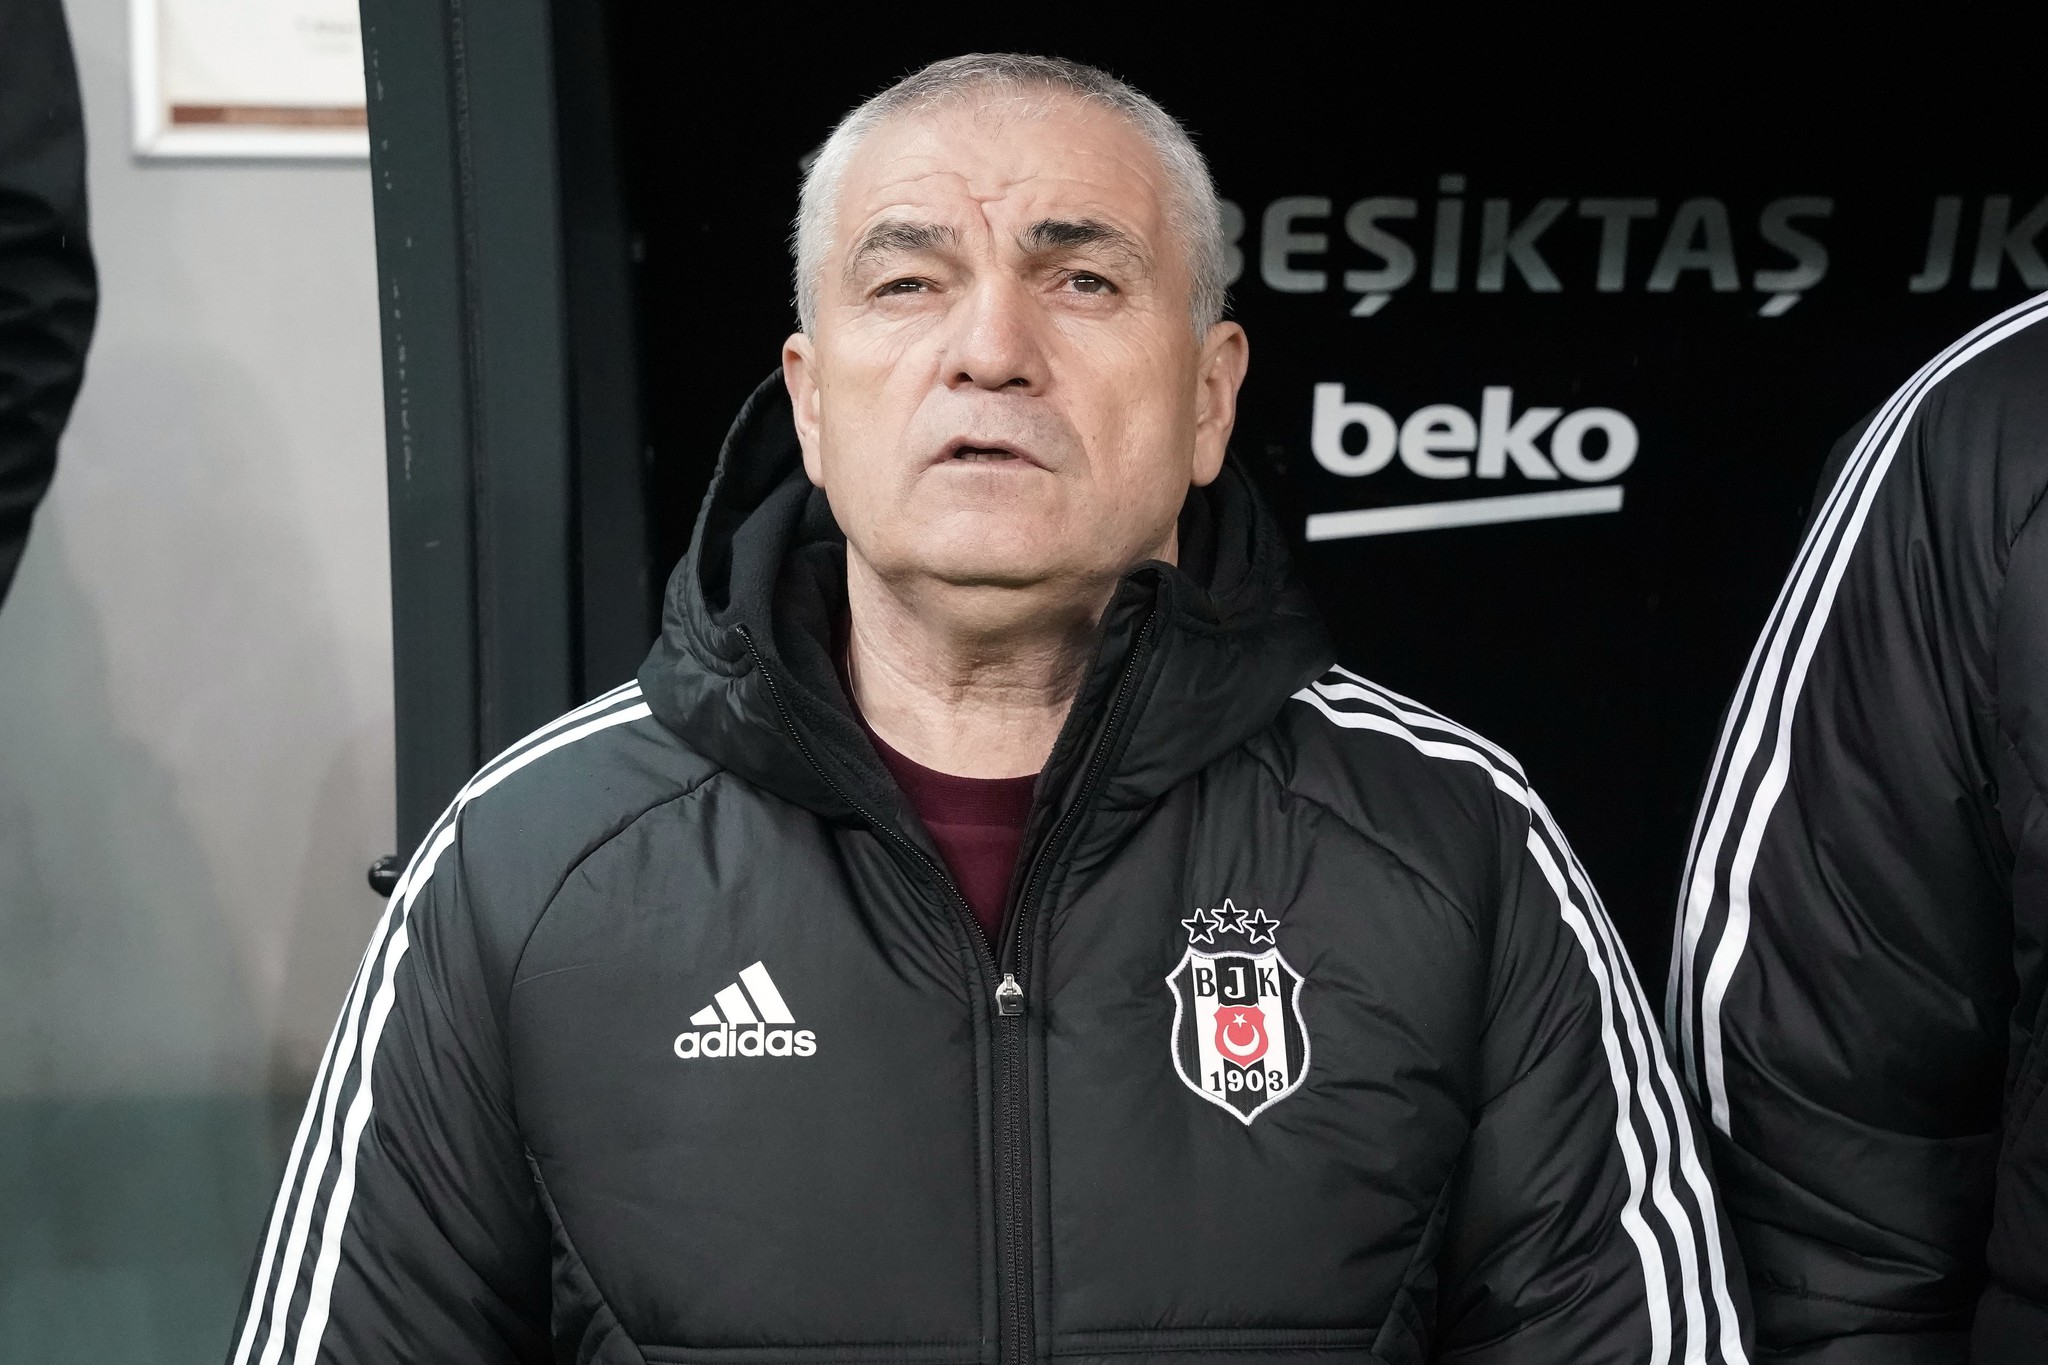 Beşiktaş 10 yabancı teknik direktörle görüşüyor! İşte öne çıkan tek isim